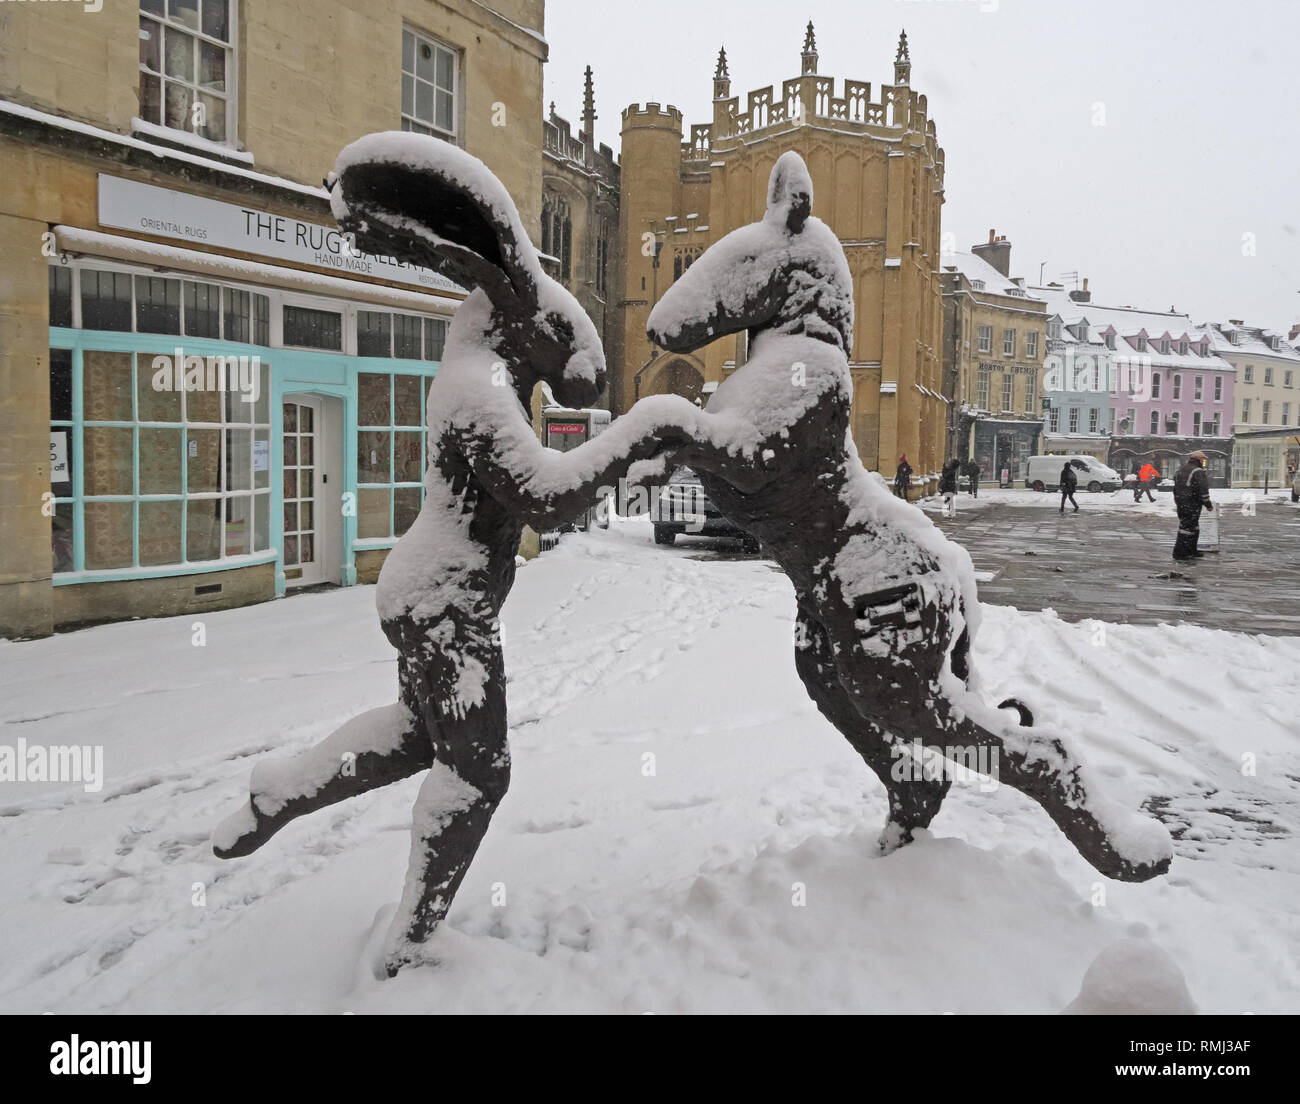 Sophie Ryder, sculpture de lapin dans la neige d'hiver le centre-ville de Cirencester, Gloucestershire, Angleterre du Sud-Ouest, Royaume-Uni Banque D'Images